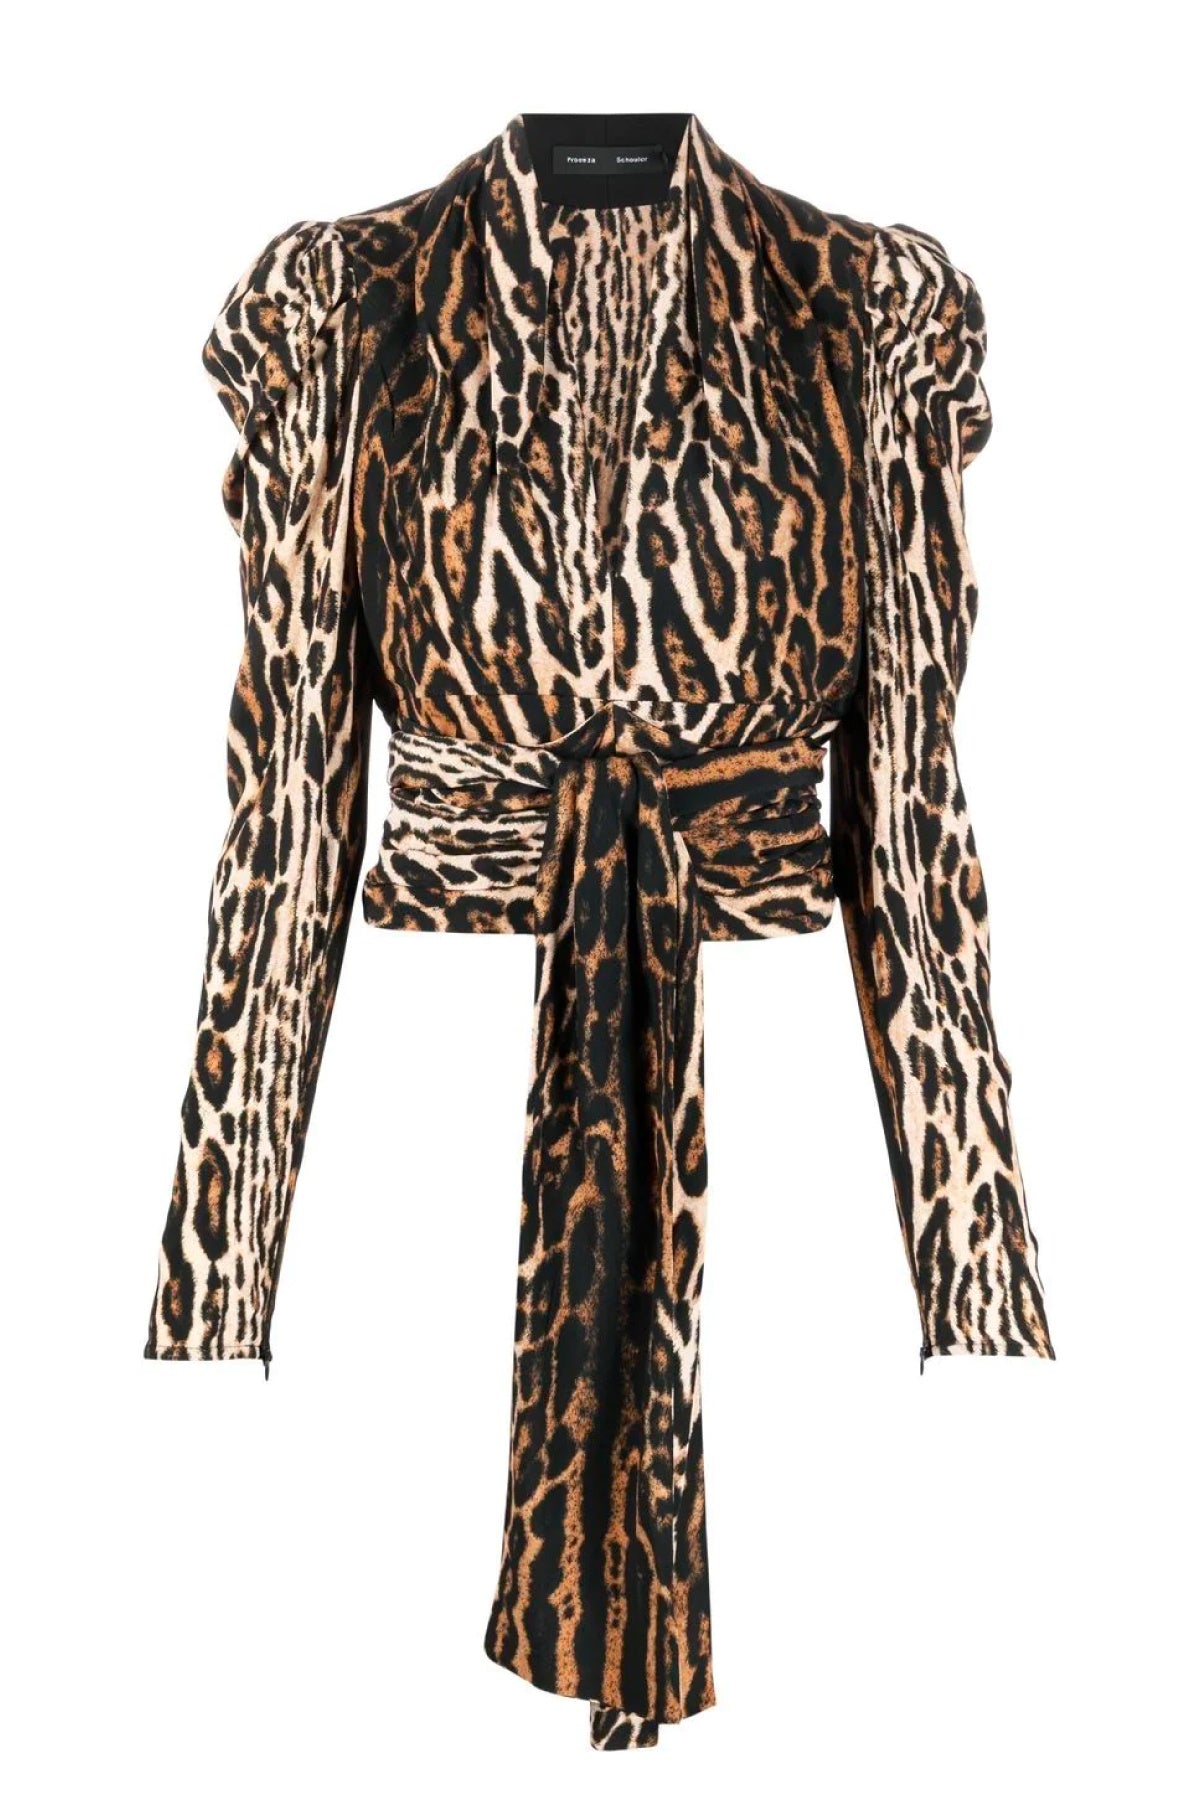 Proenza Schouler Leopard Print V-Neck Top - Brown Multi